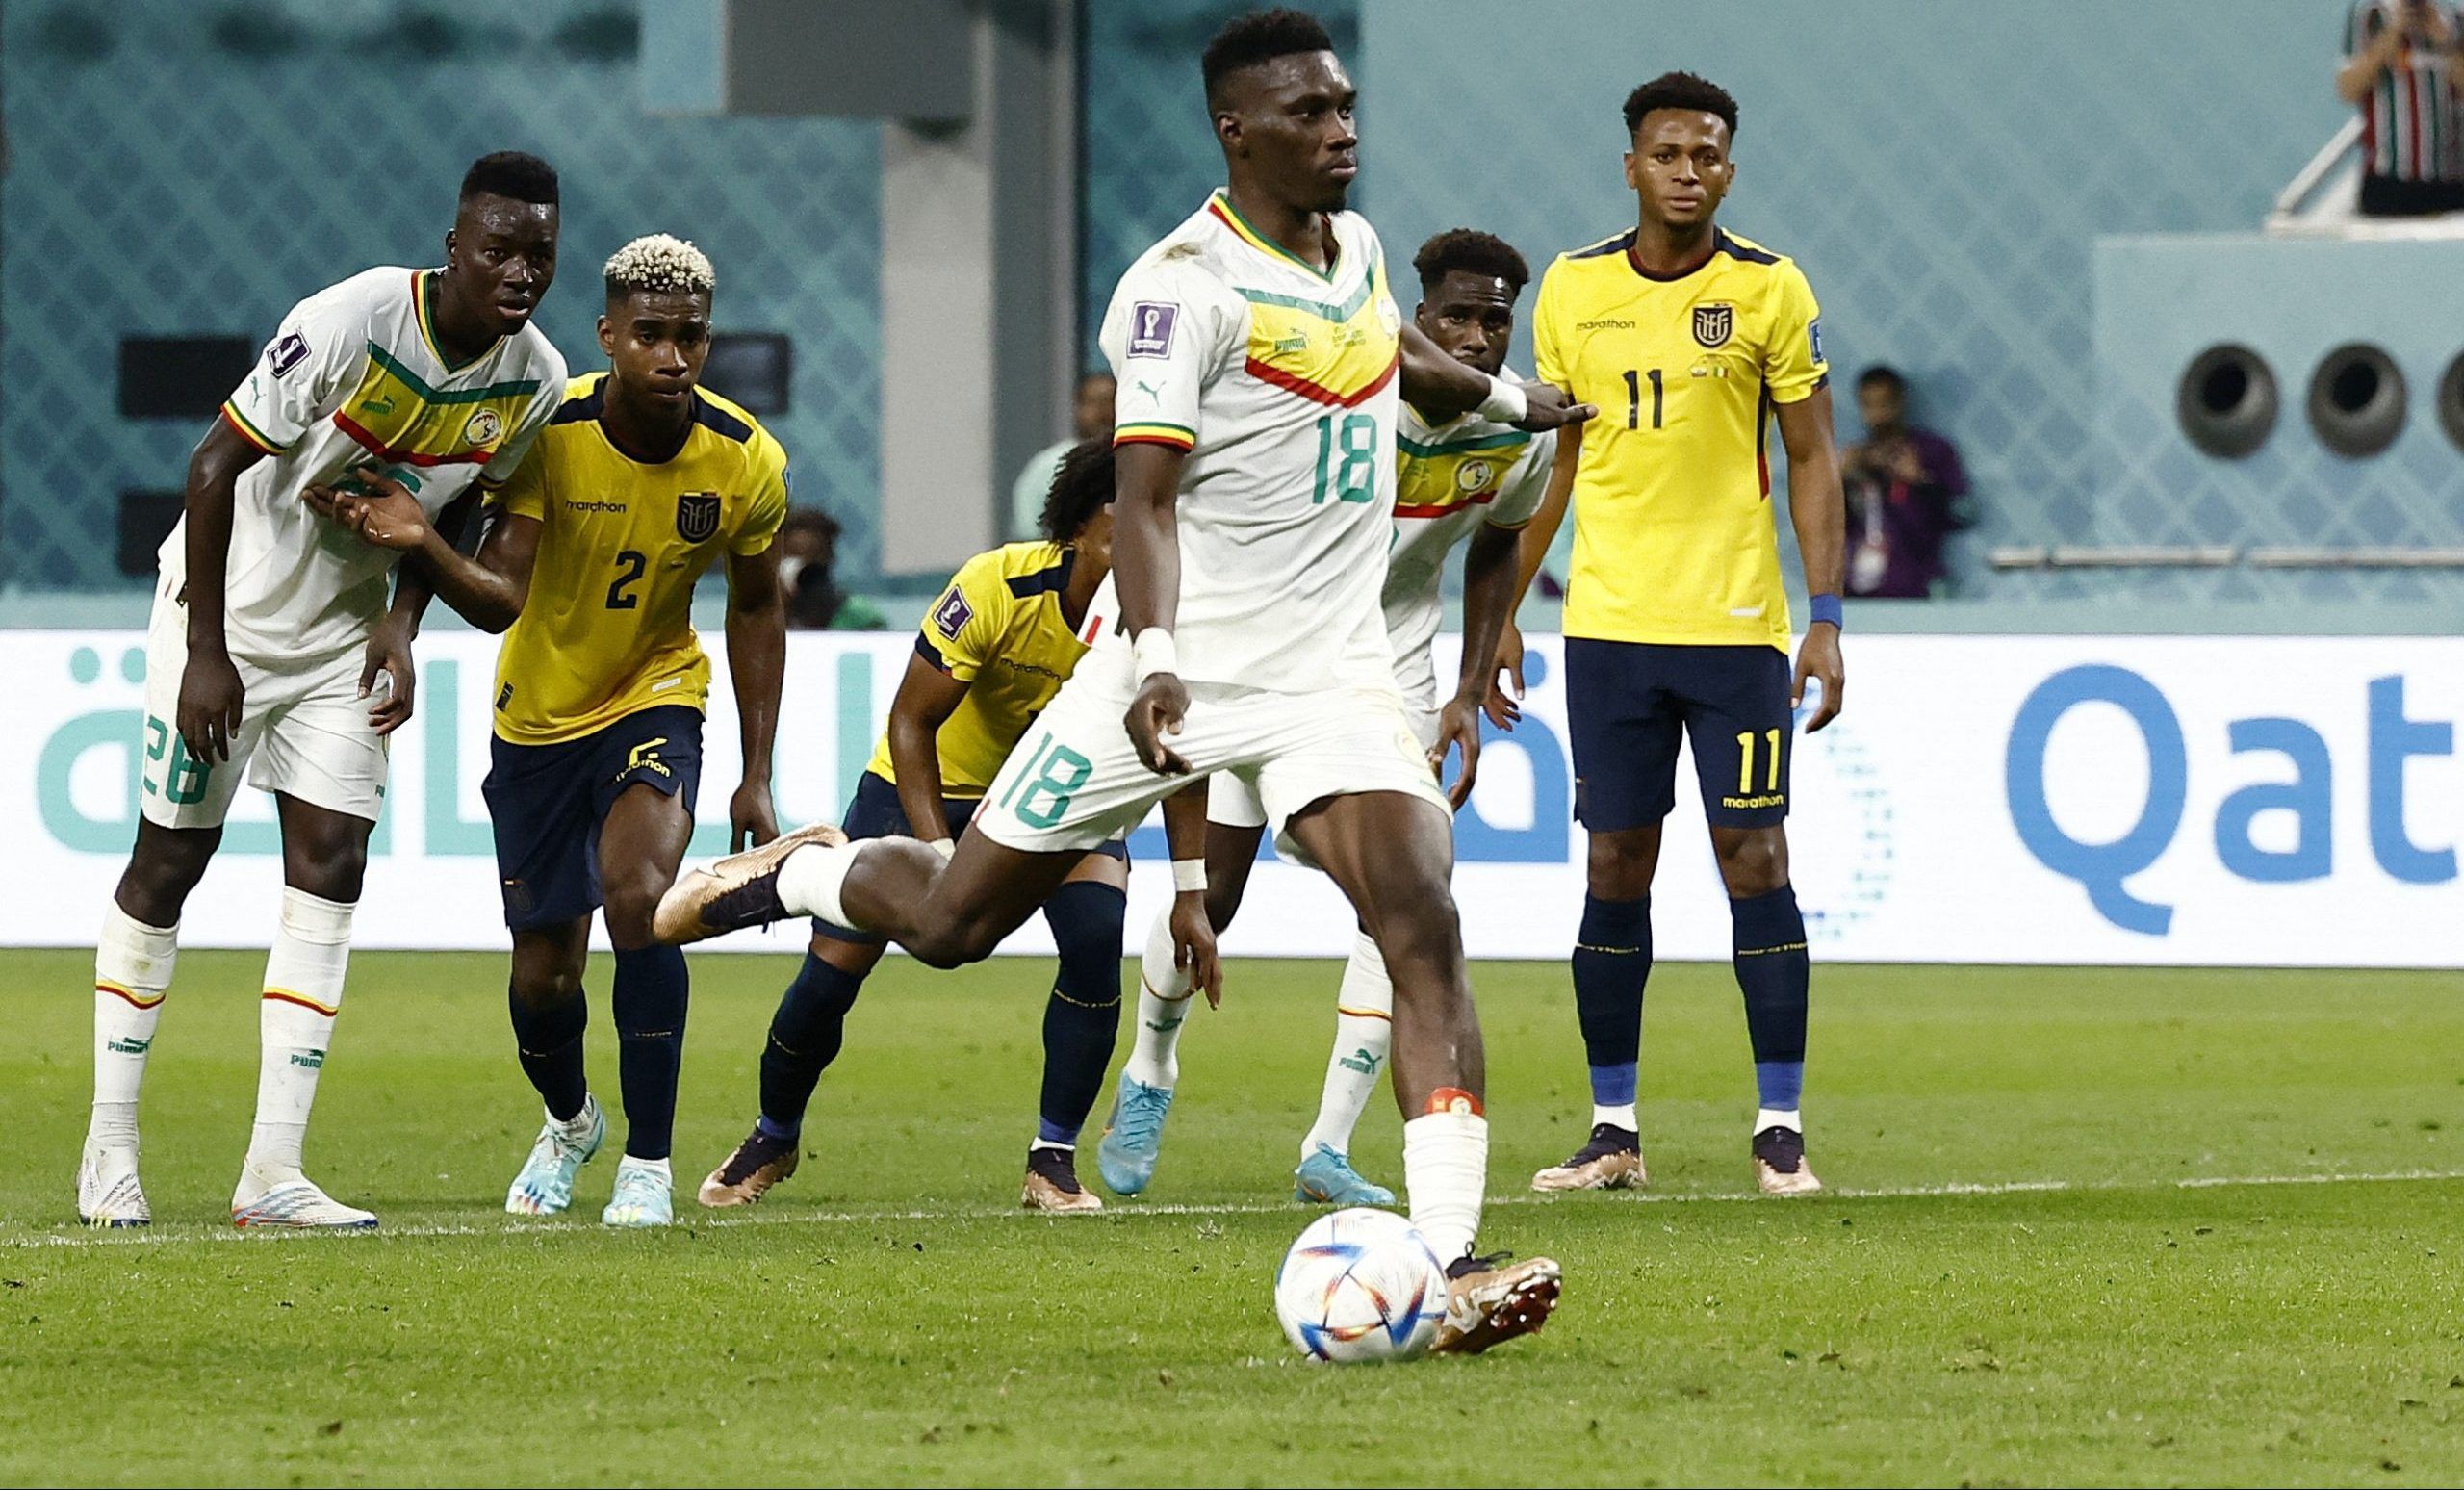 Sarr-Senegal-Leeds-Orta-Marsch-World-Cup-transfer